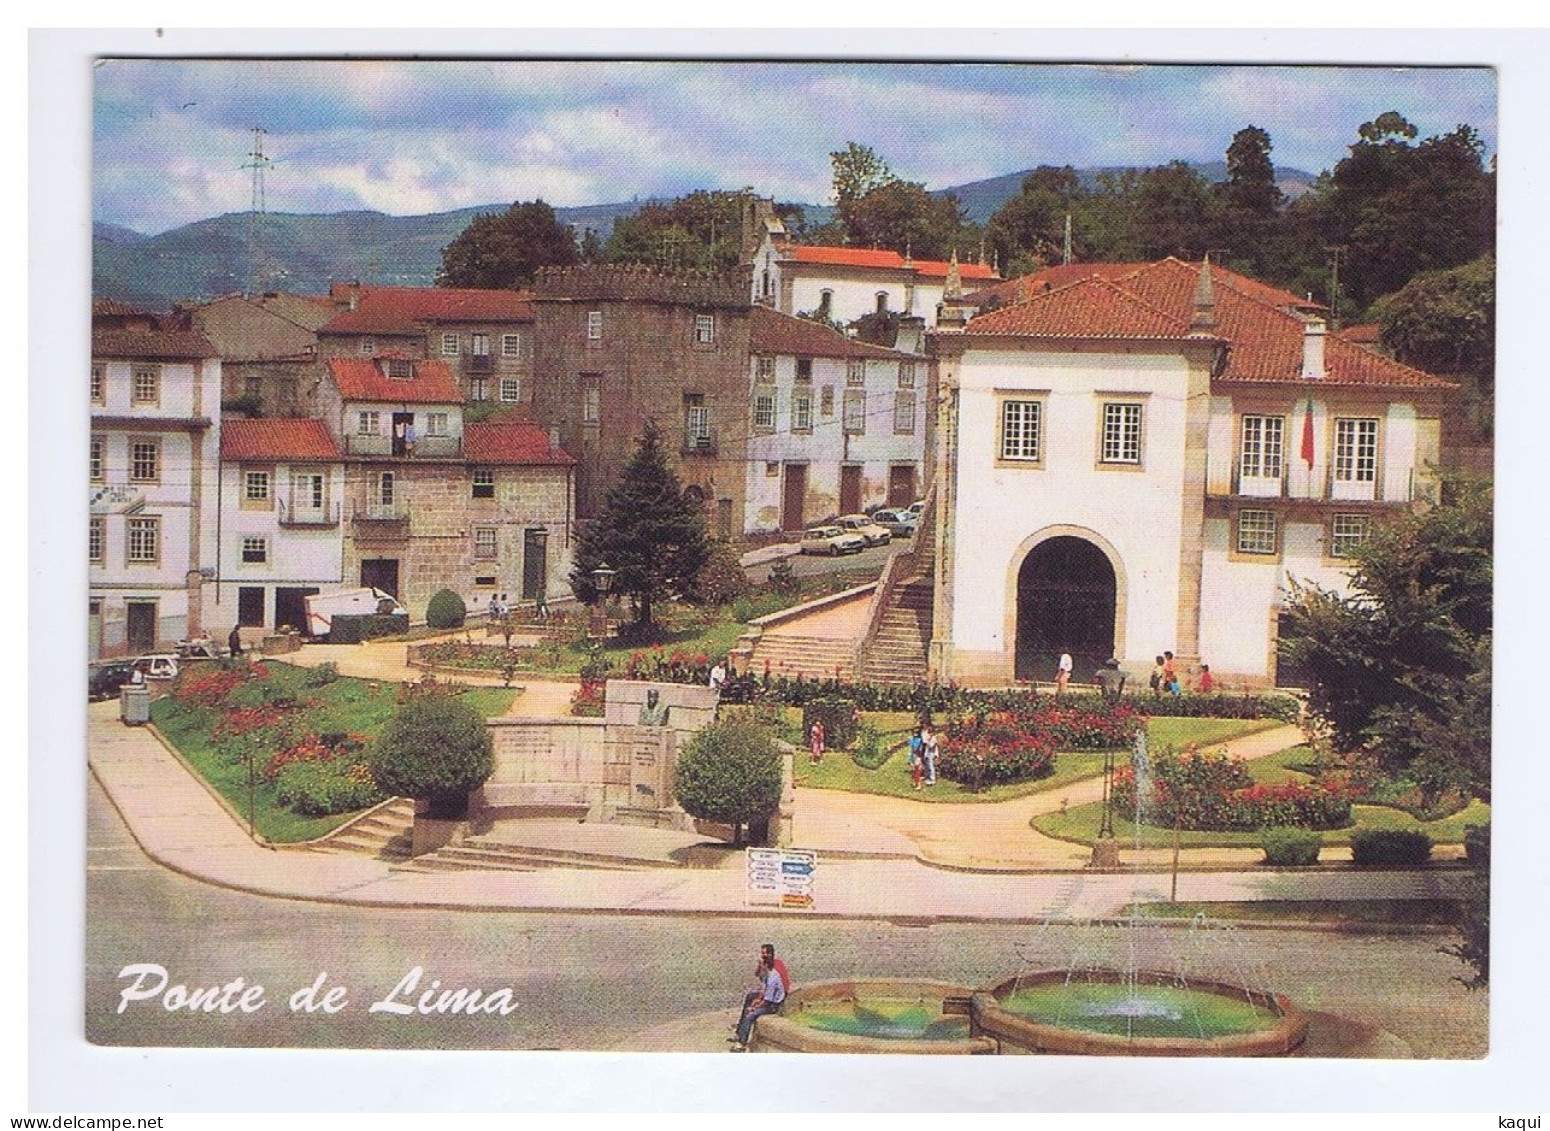 PORTUGAL - PONTE DE LIMA - Praça Da Repùblica - Edicôes Lusocolor - N° 488 - Viana Do Castelo